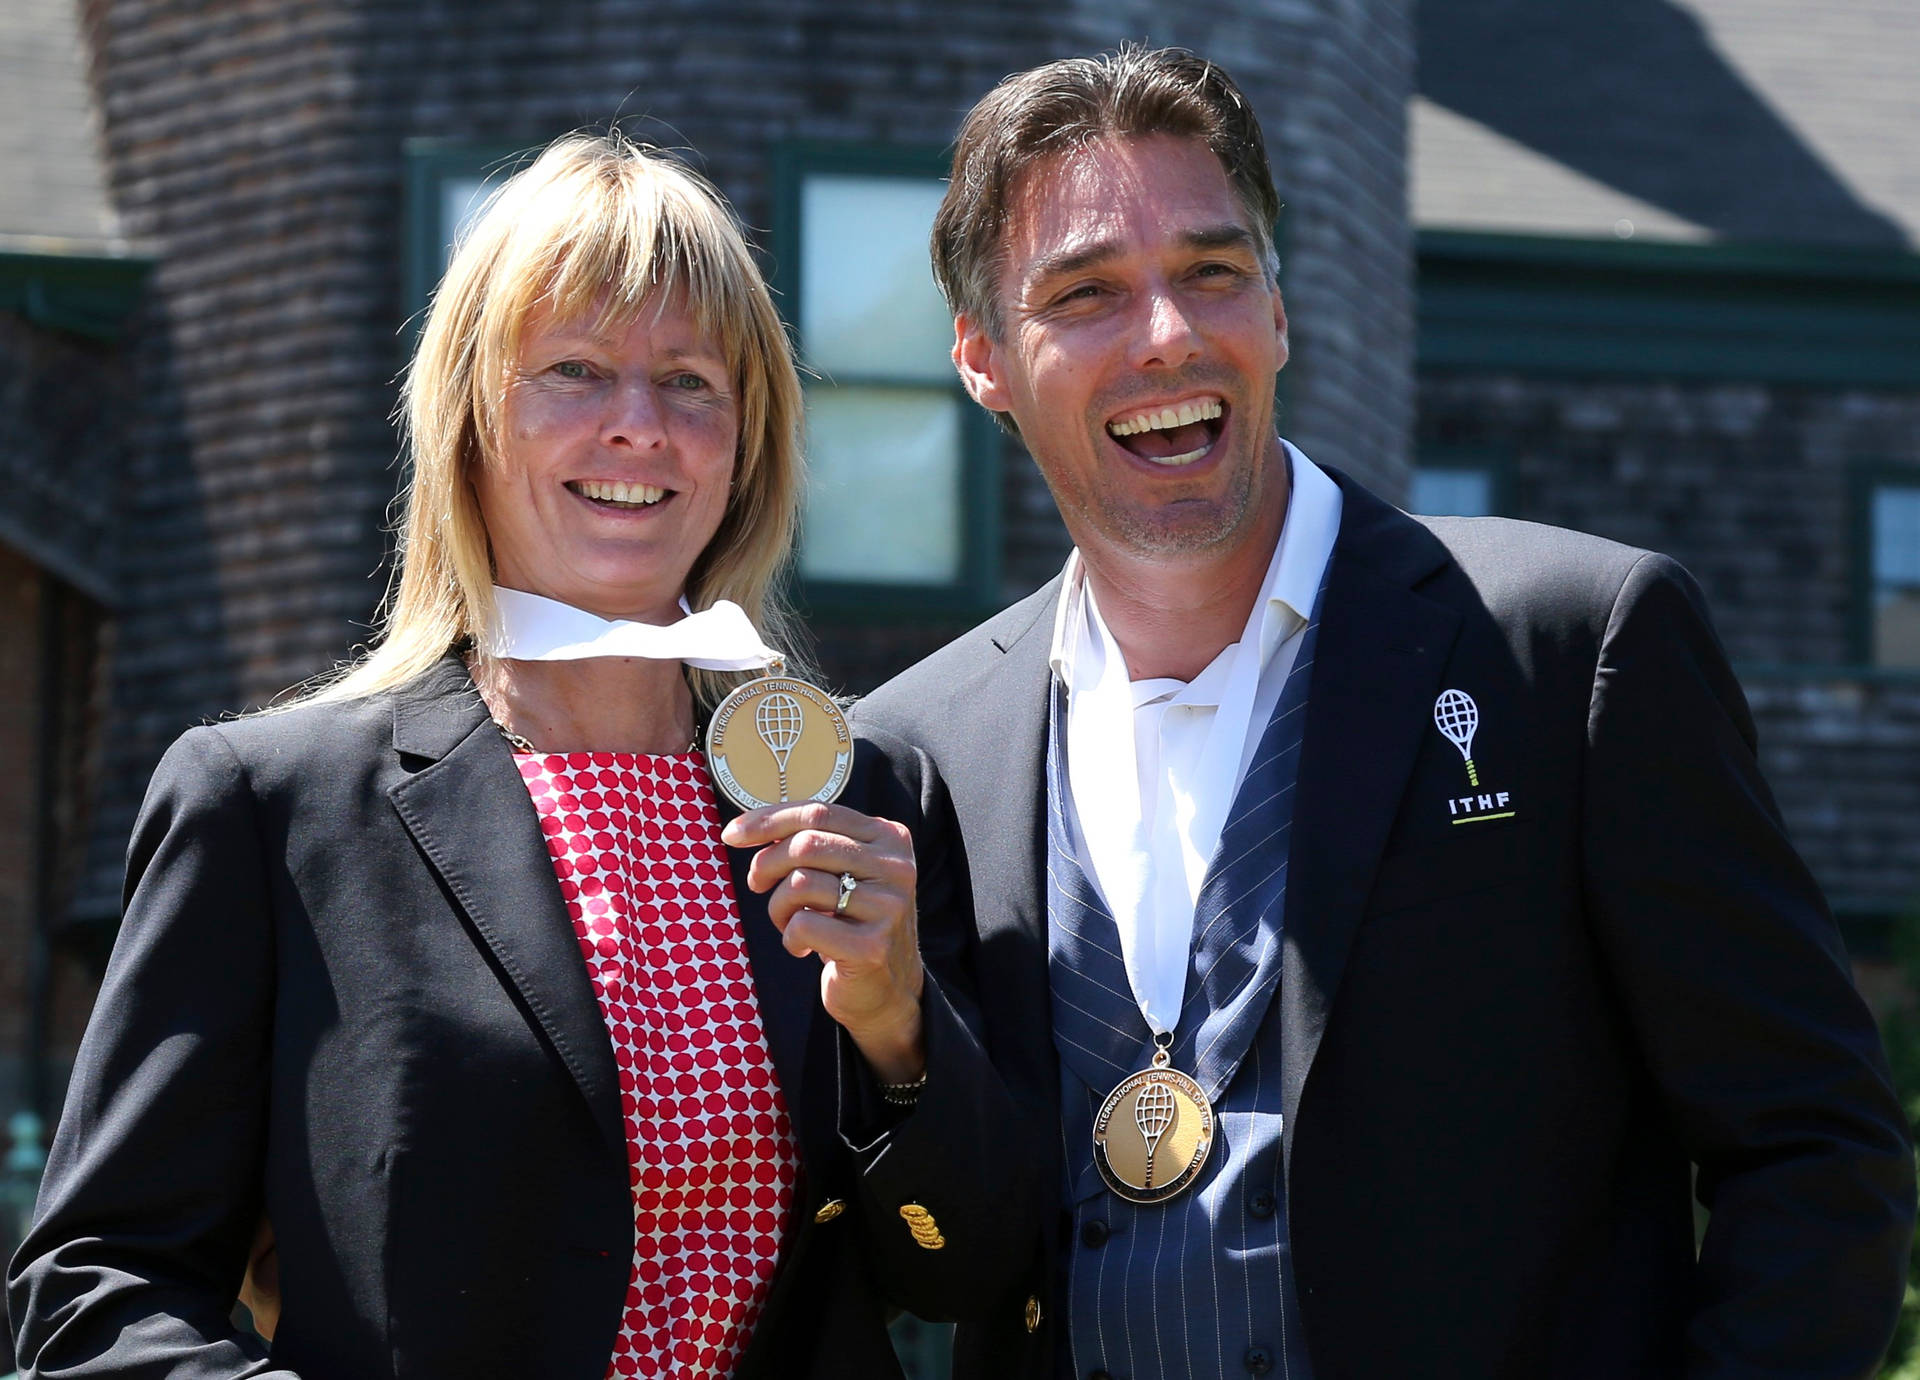 Helenasukova Und Michael Stich Posieren Mit Medaillen Wallpaper